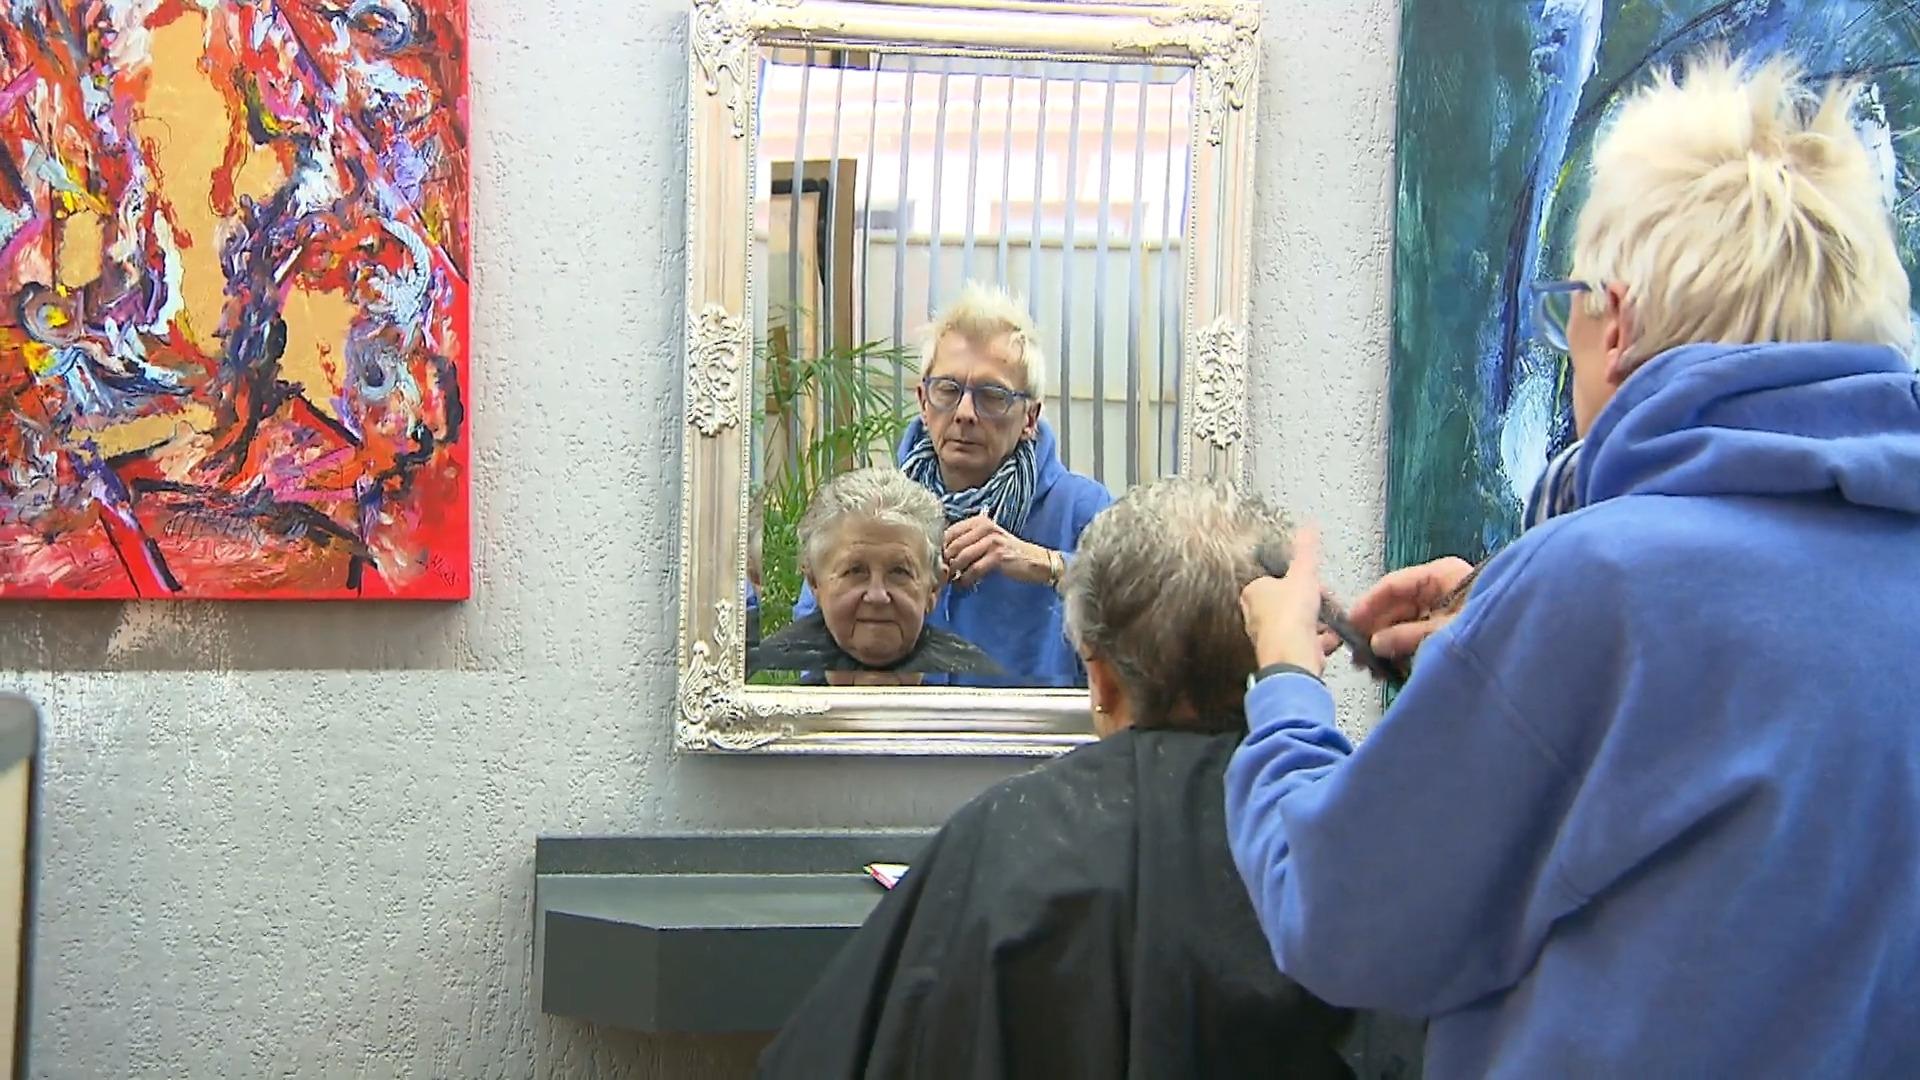 Friseur aus Hagen zieht Reißleine 3-Tage-Woche